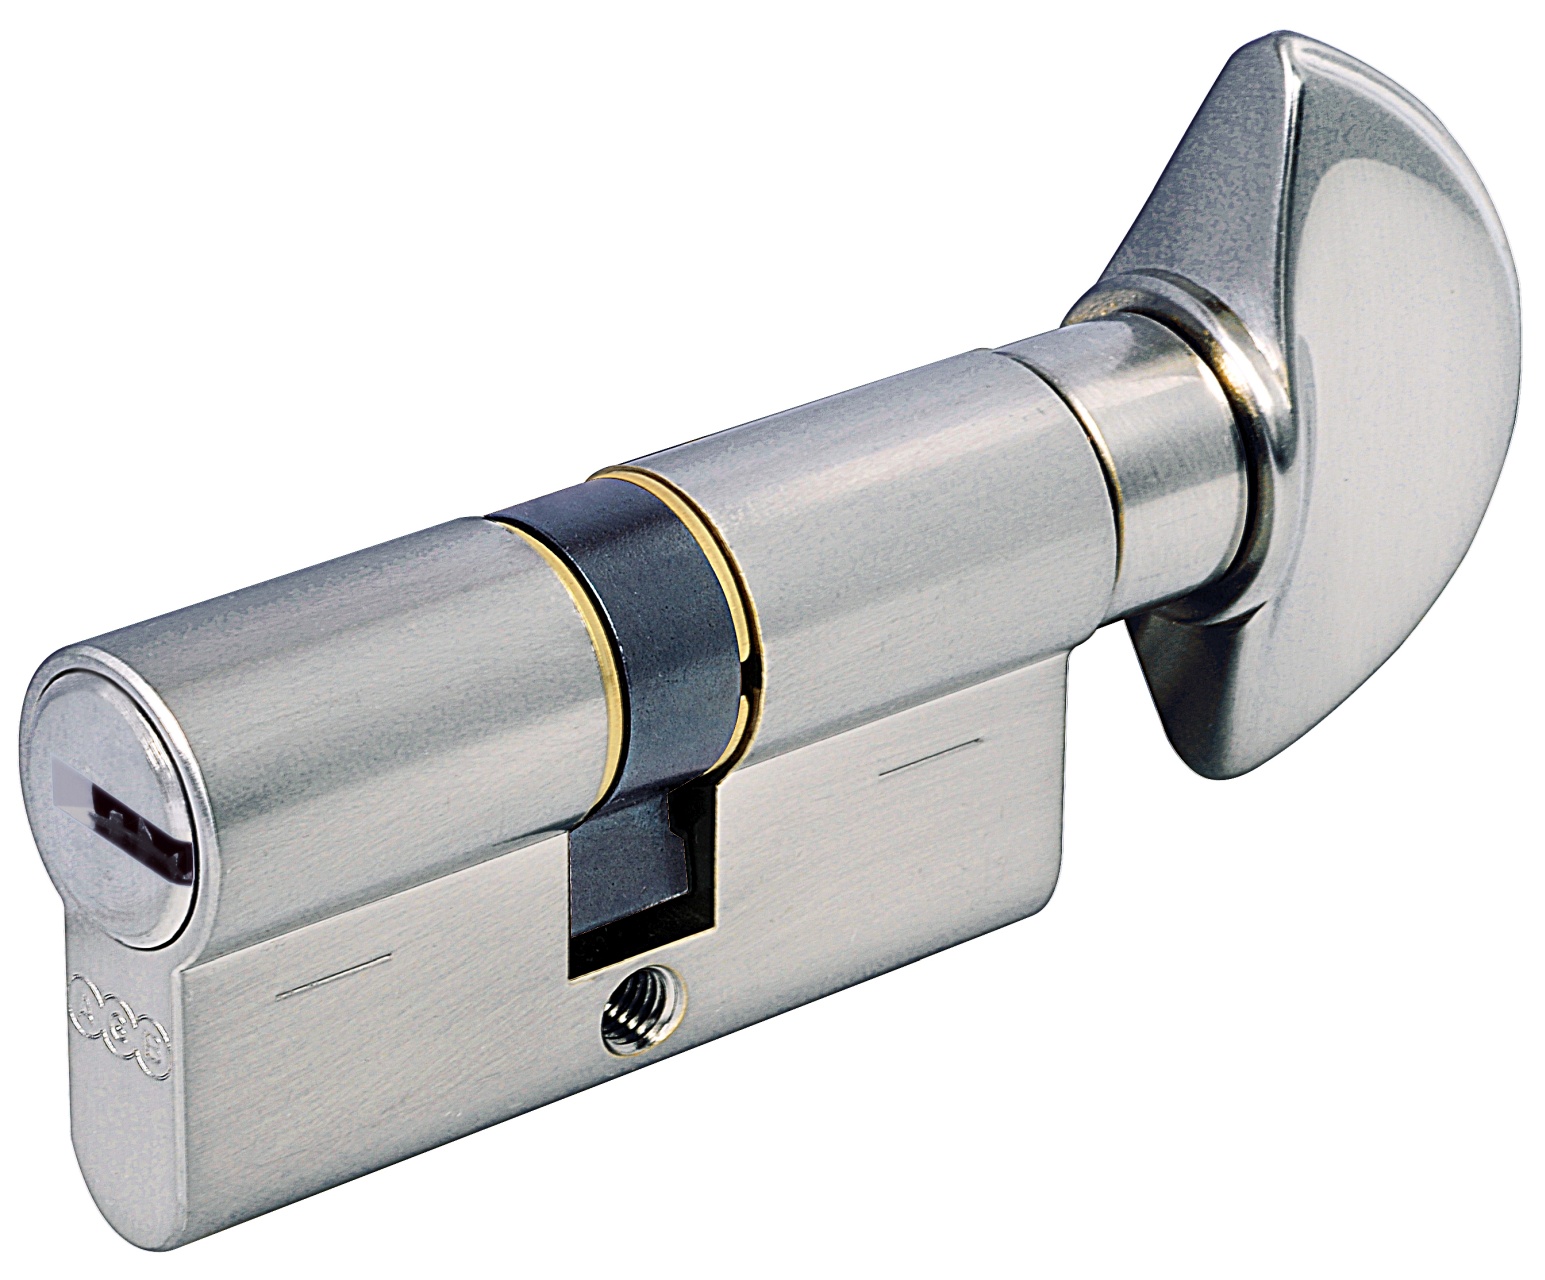 AGB -  Cilindro SCUDO 5000 PS frizionato anti bamping con chiave e pomolo - col. NICHELATO OPACO - lunghezza 100 - misura P-40-10-50